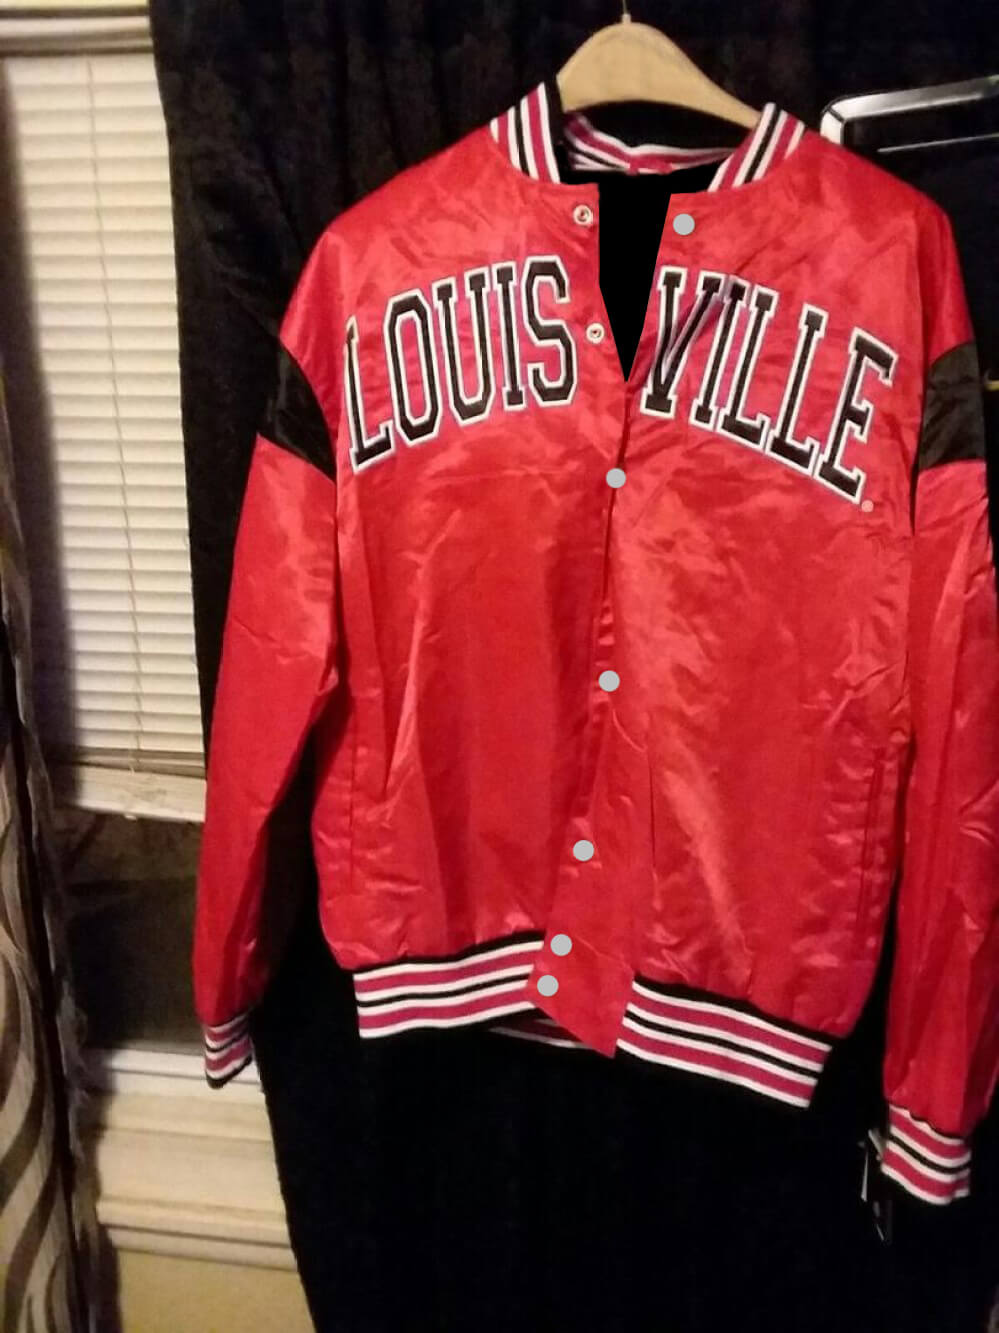 louisville jackets for women